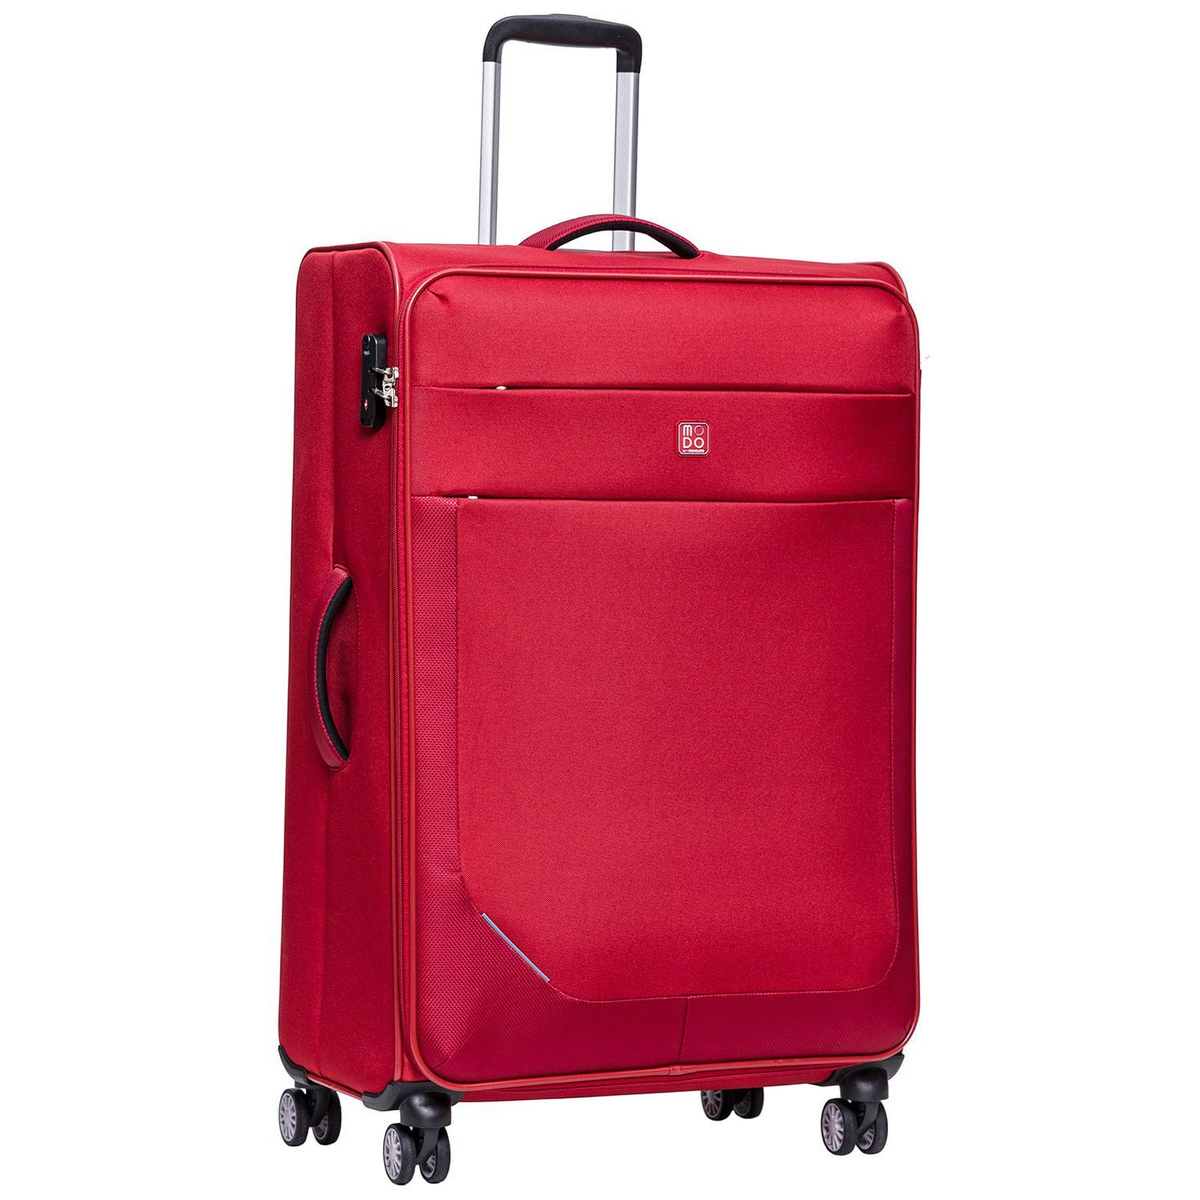 Размер чемодана: 49x80x29 см Вес чемодана: 3,8 кг Объём чемодана: 98 л